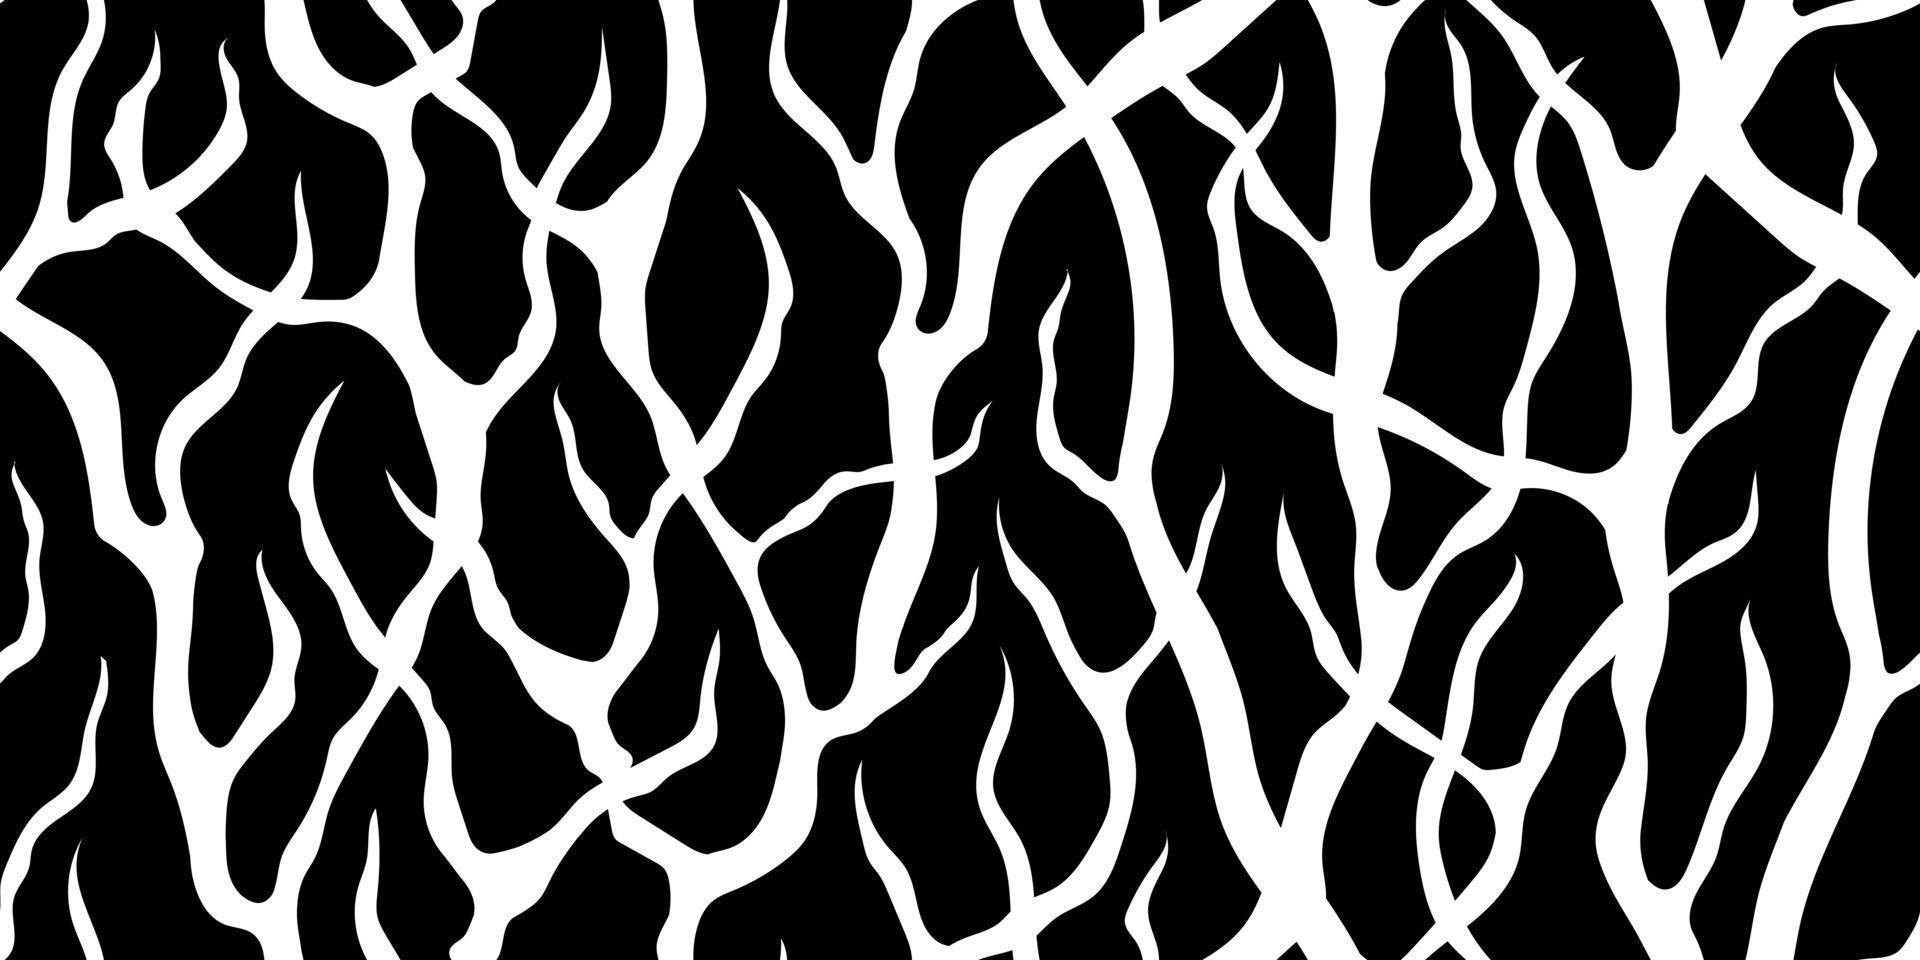 abstrakt vektor sömlös svart banner med vita snår av trädgrenar